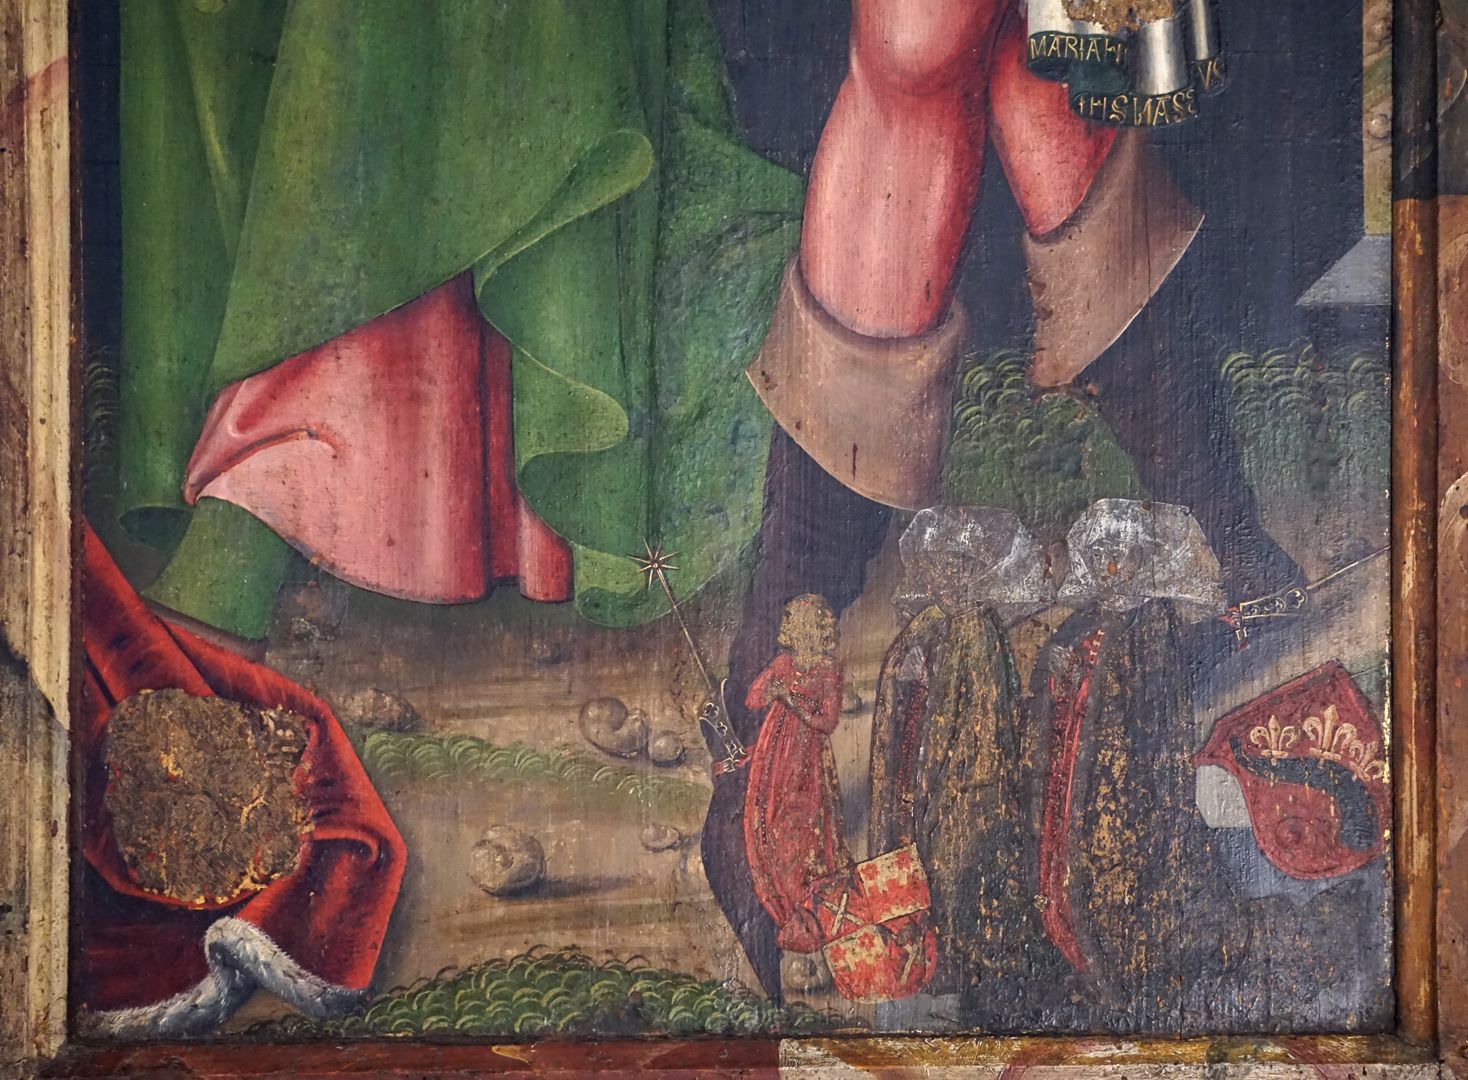 Epiphany altar unten rechts, Stifterfamilie, Frauenseite. Bei der Frau ganz rechts das Wappen der Bolstat, bei der Frau daneben das gevierte Wappen der Rosenberger und Ehinger. Marx Rosenberger heiratete 1506 Clara Ehinger († 1517). Spätere Hinzufügung?